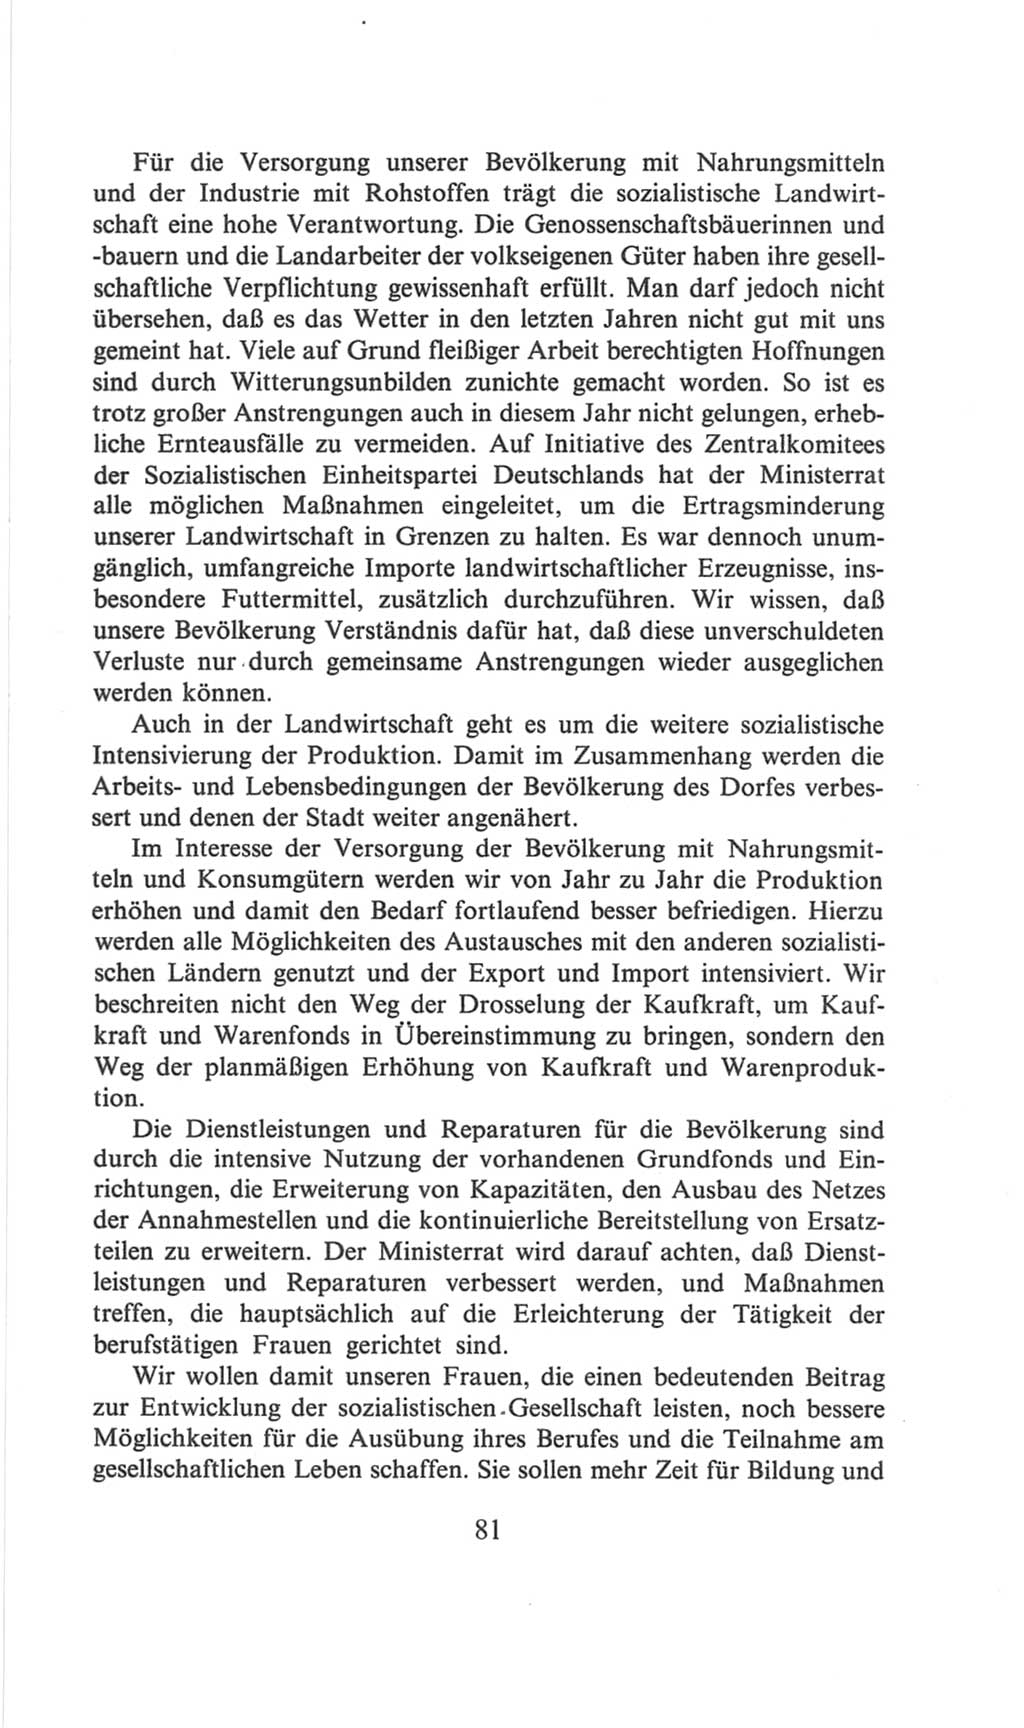 Volkskammer (VK) der Deutschen Demokratischen Republik (DDR), 6. Wahlperiode 1971-1976, Seite 81 (VK. DDR 6. WP. 1971-1976, S. 81)